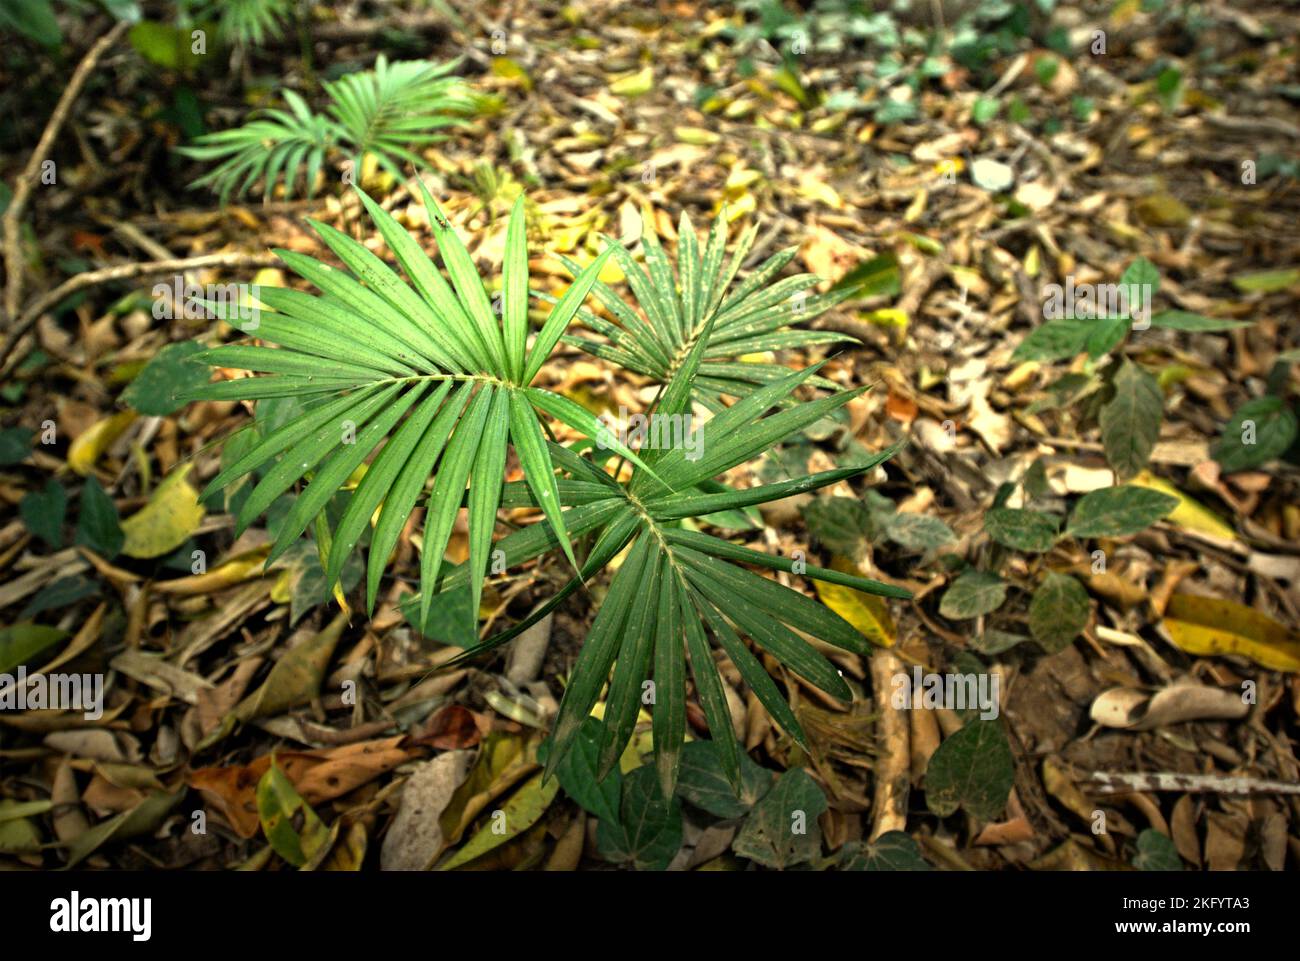 Auf dem Boden des Tieflandregenwaldes im Ujung Kulon National Park in Pandeglang, Banten, Indonesien, wächst eine Palme. Stockfoto